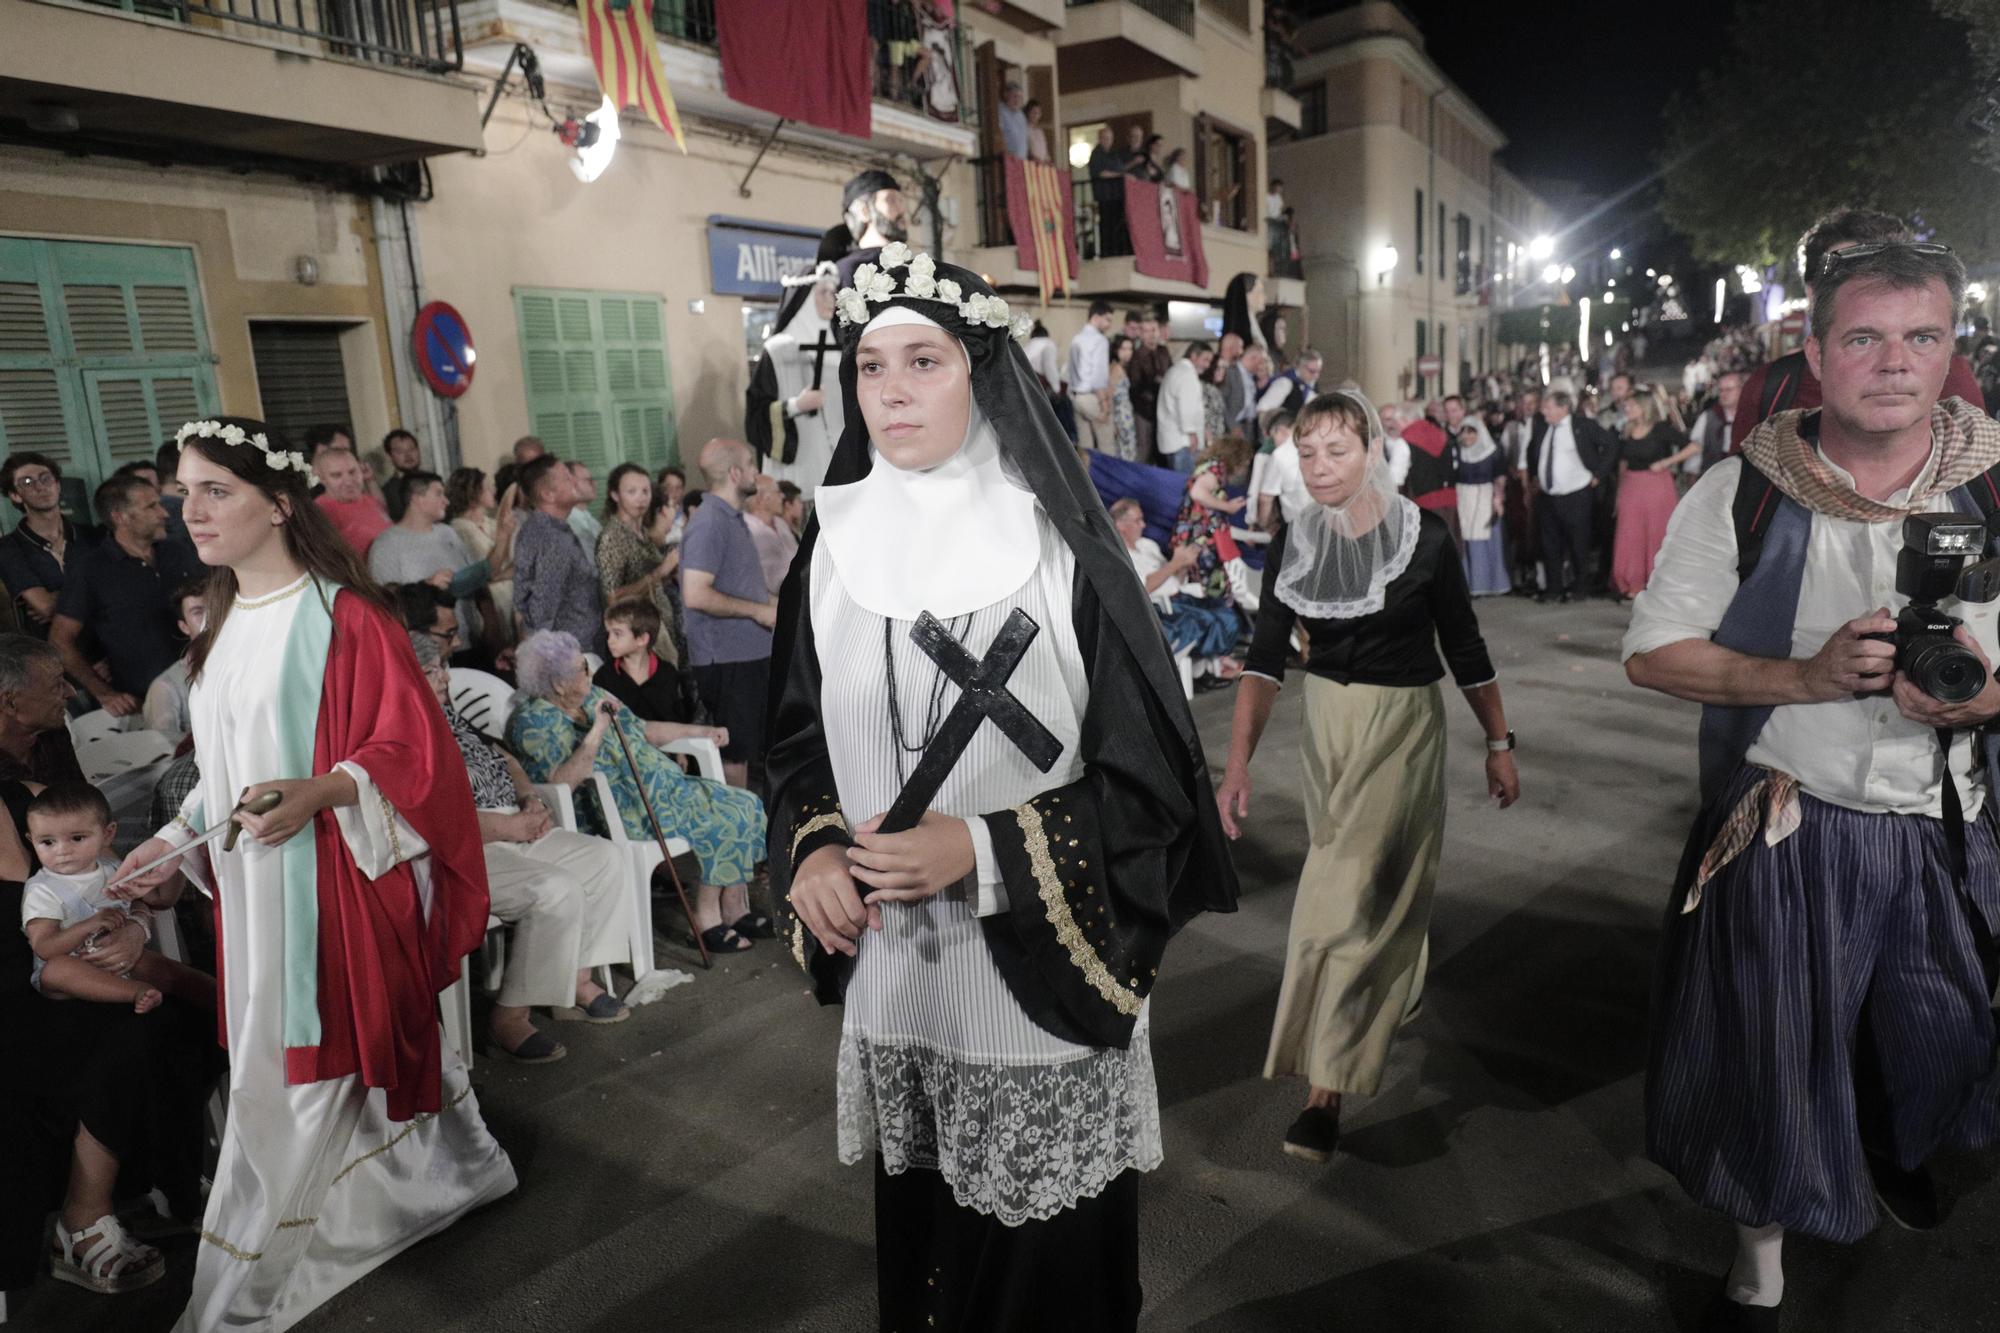 La procesión más típica de Mallorca: La Beata de Santa Margalida